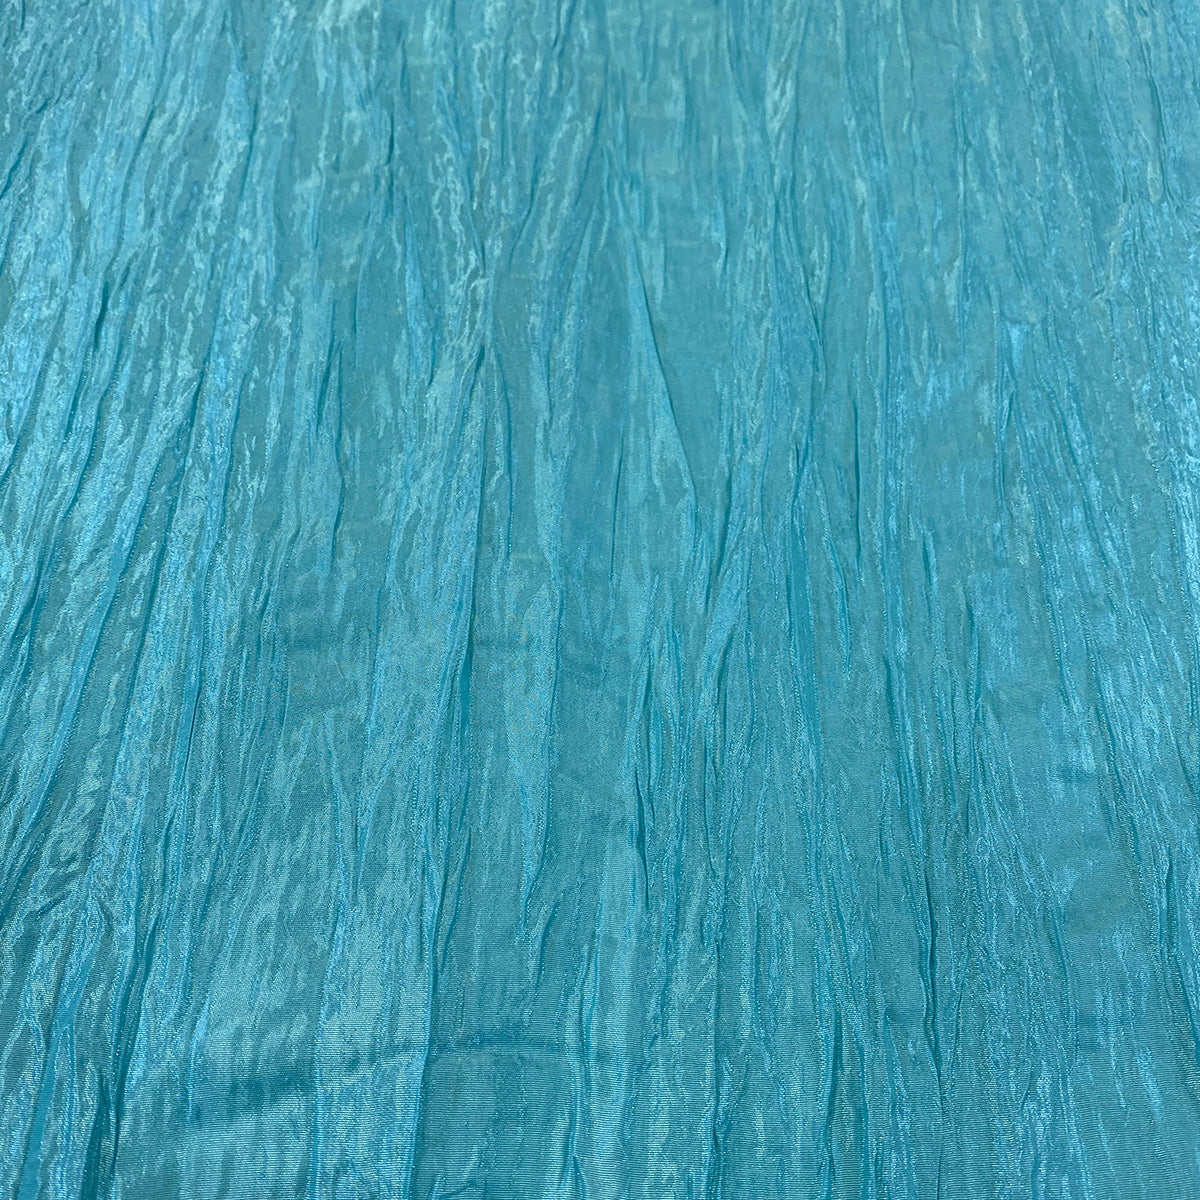 Turquoise 14